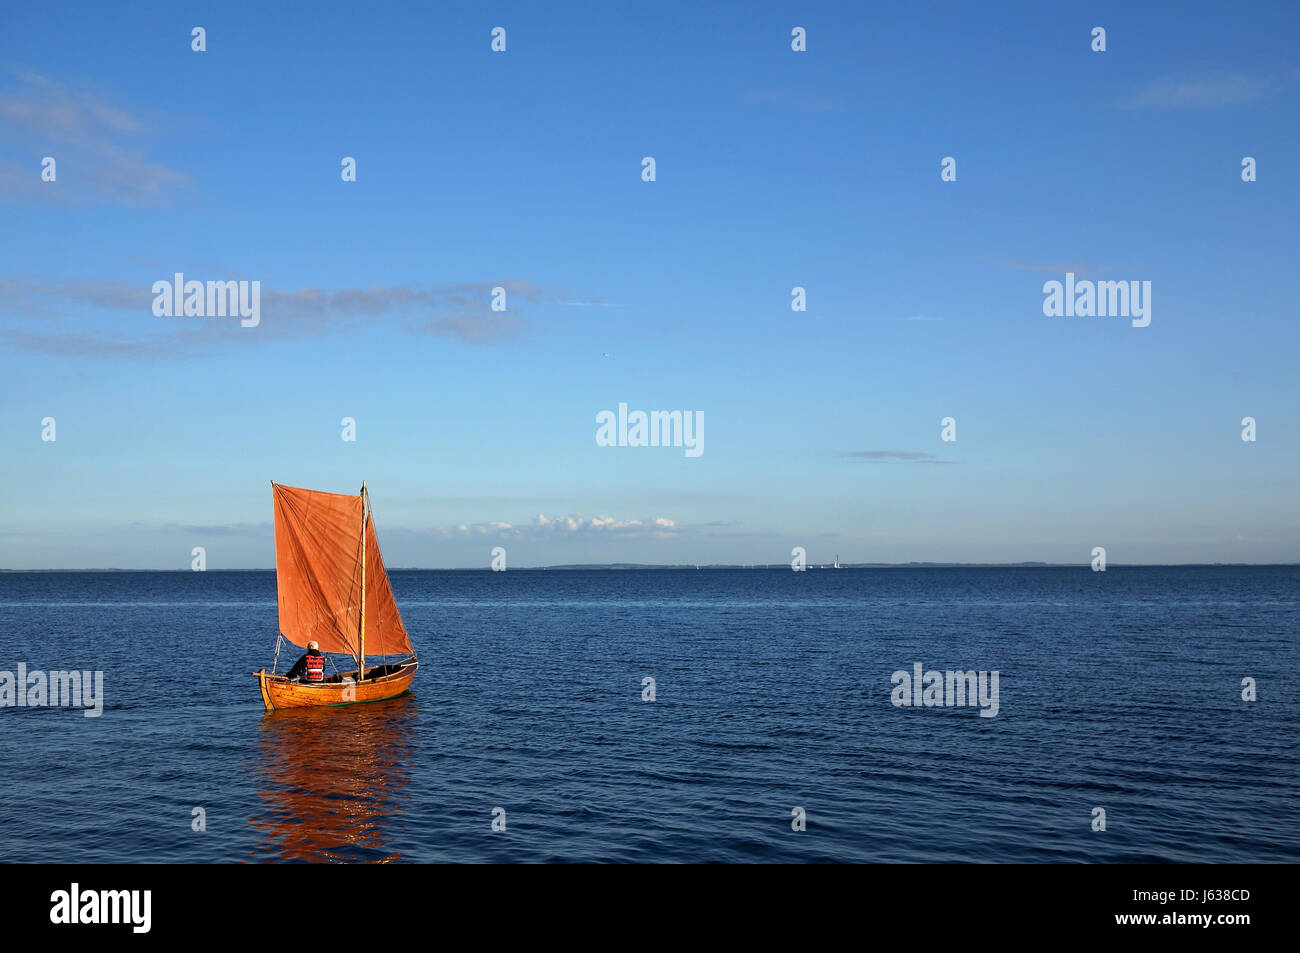 Petit bateau en bois avec voile orange et personne anonyme qui contrôle le bateau sur l'océan calme Banque D'Images